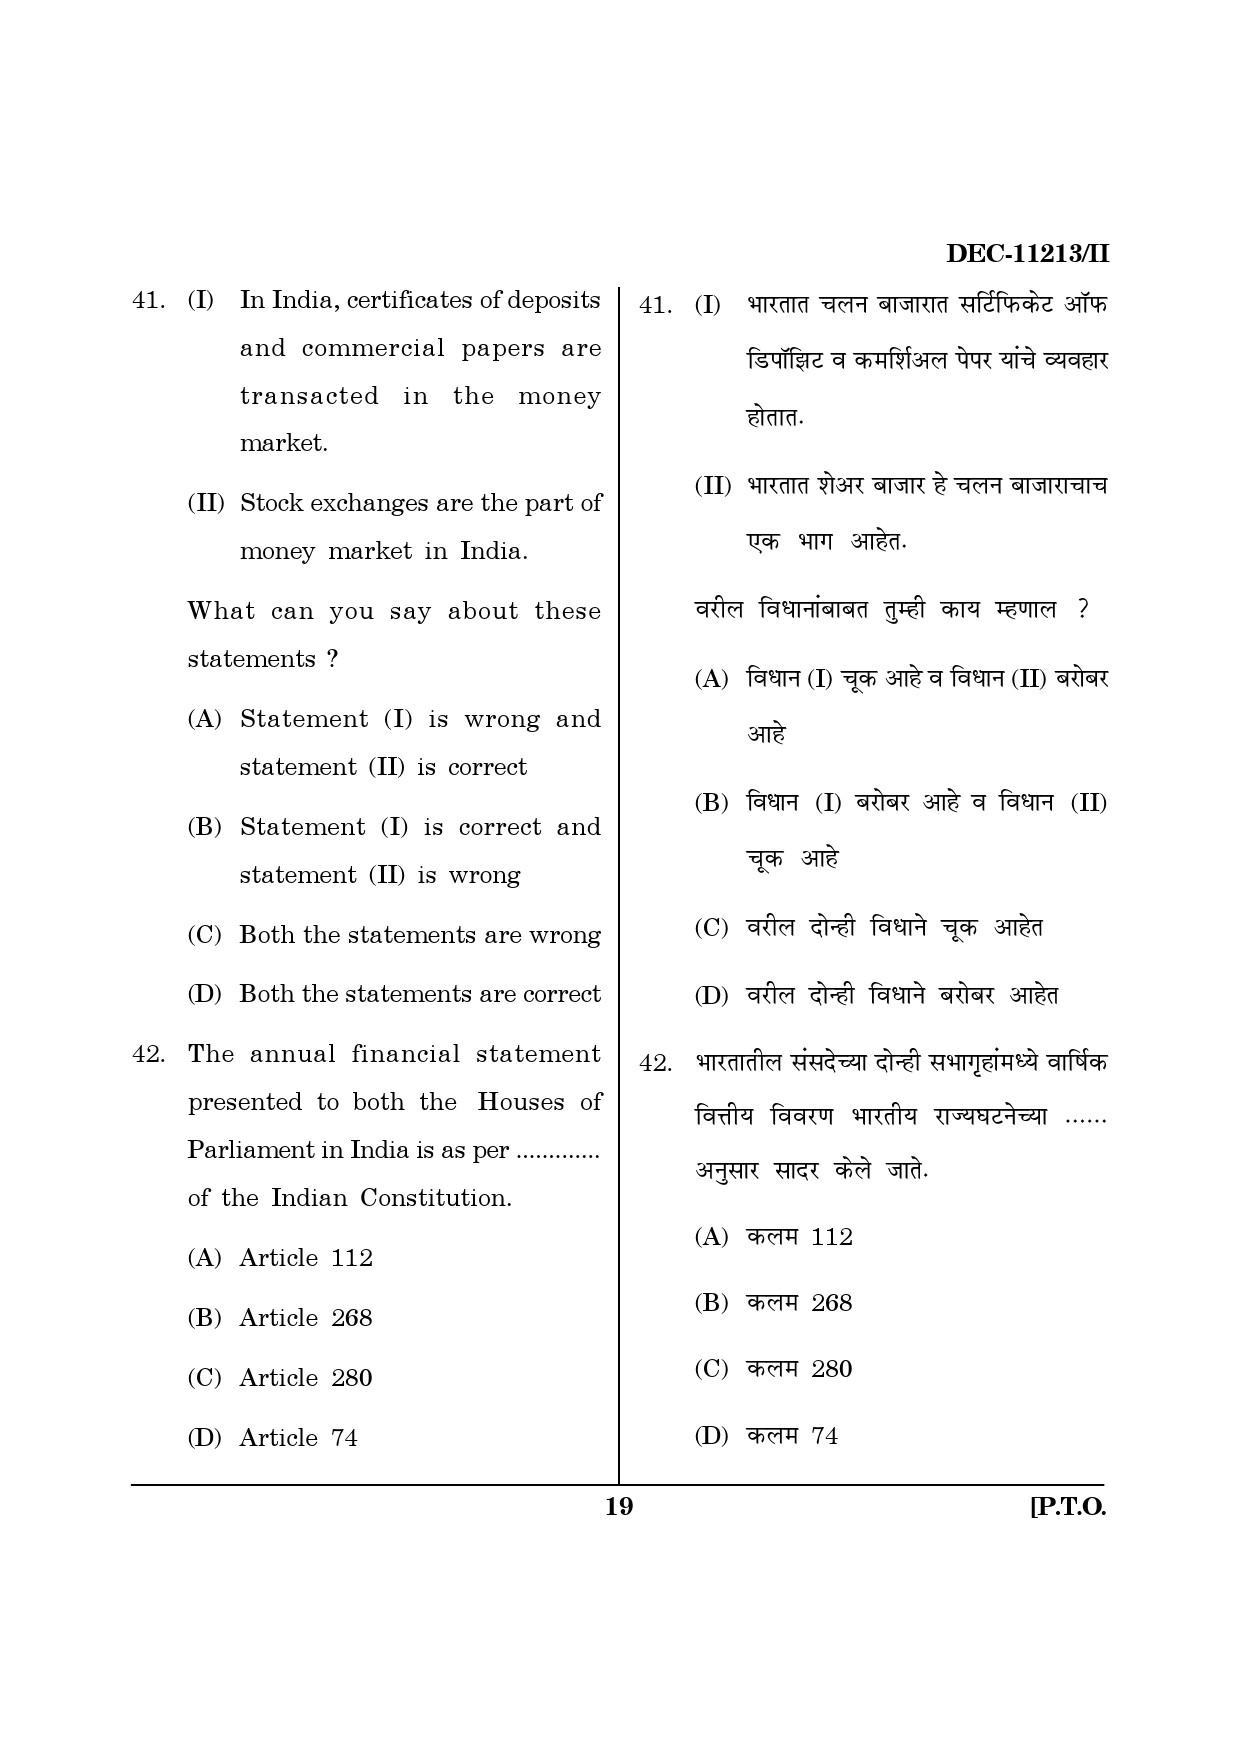 Maharashtra SET Economics Question Paper II December 2013 18